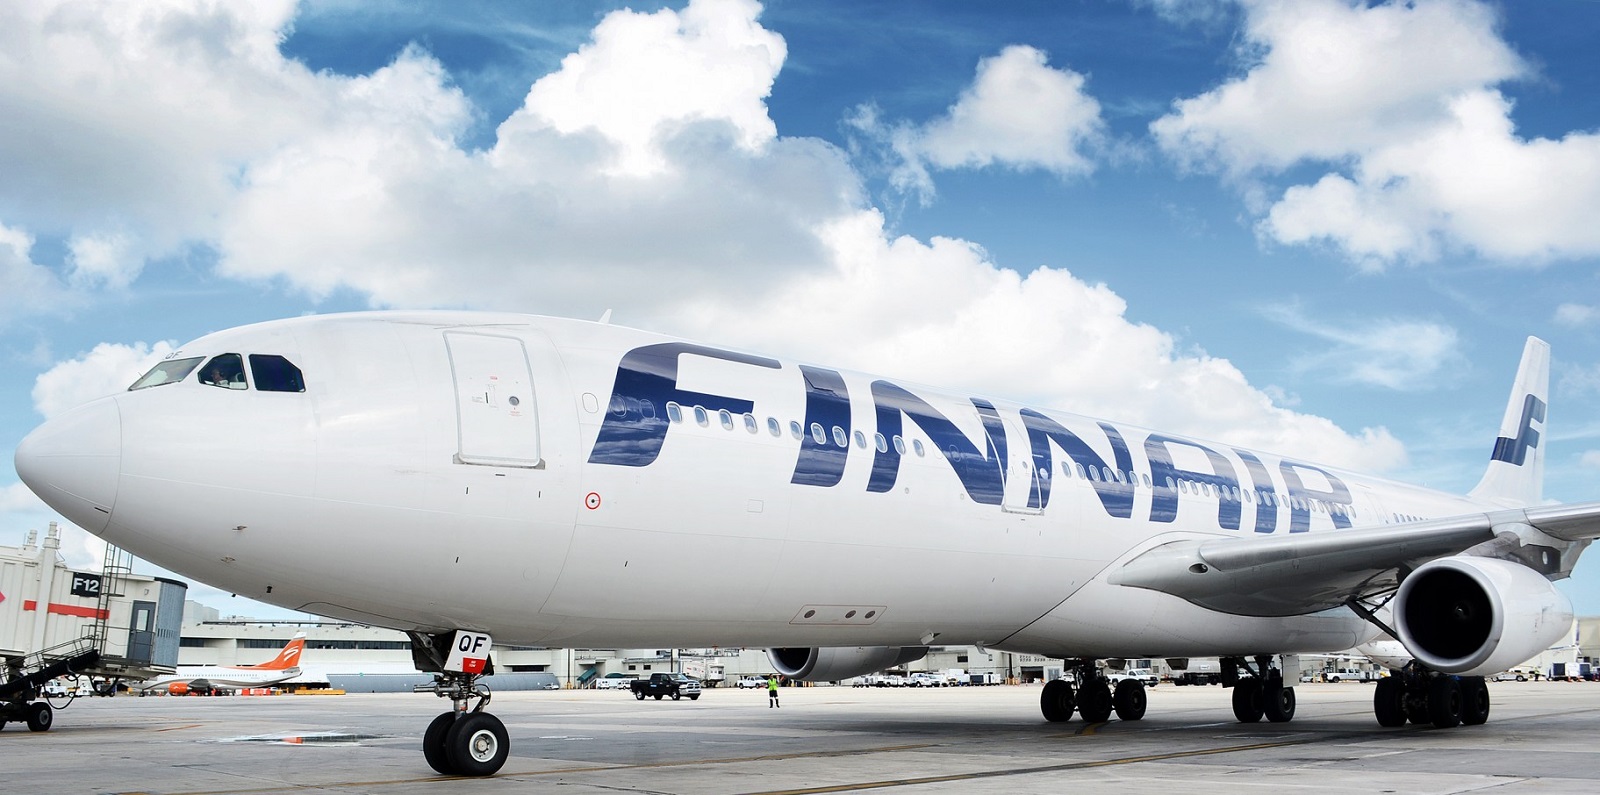 Akciós repülőjegyek Finnair járataival